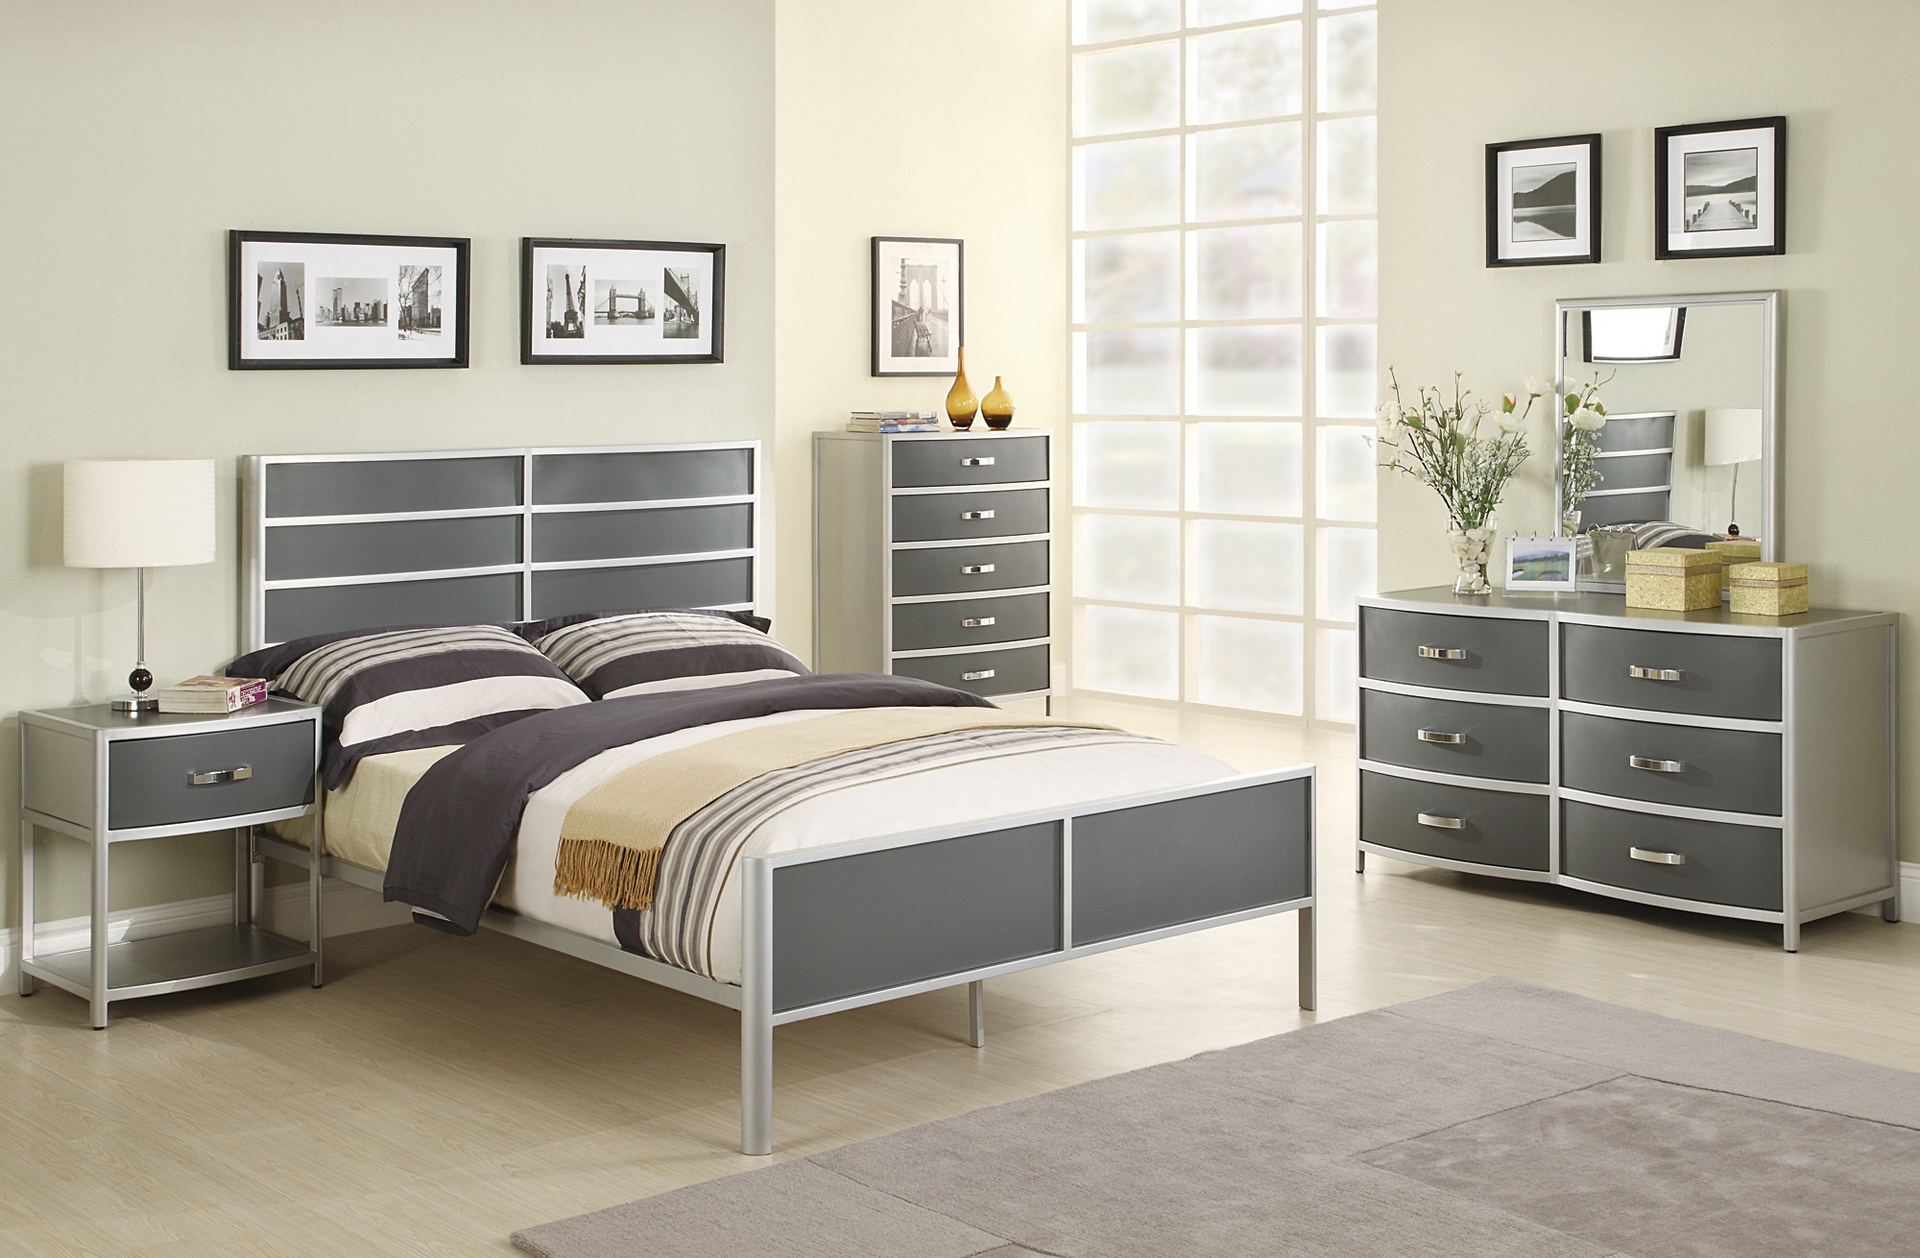 embossed silver bedroom furniture